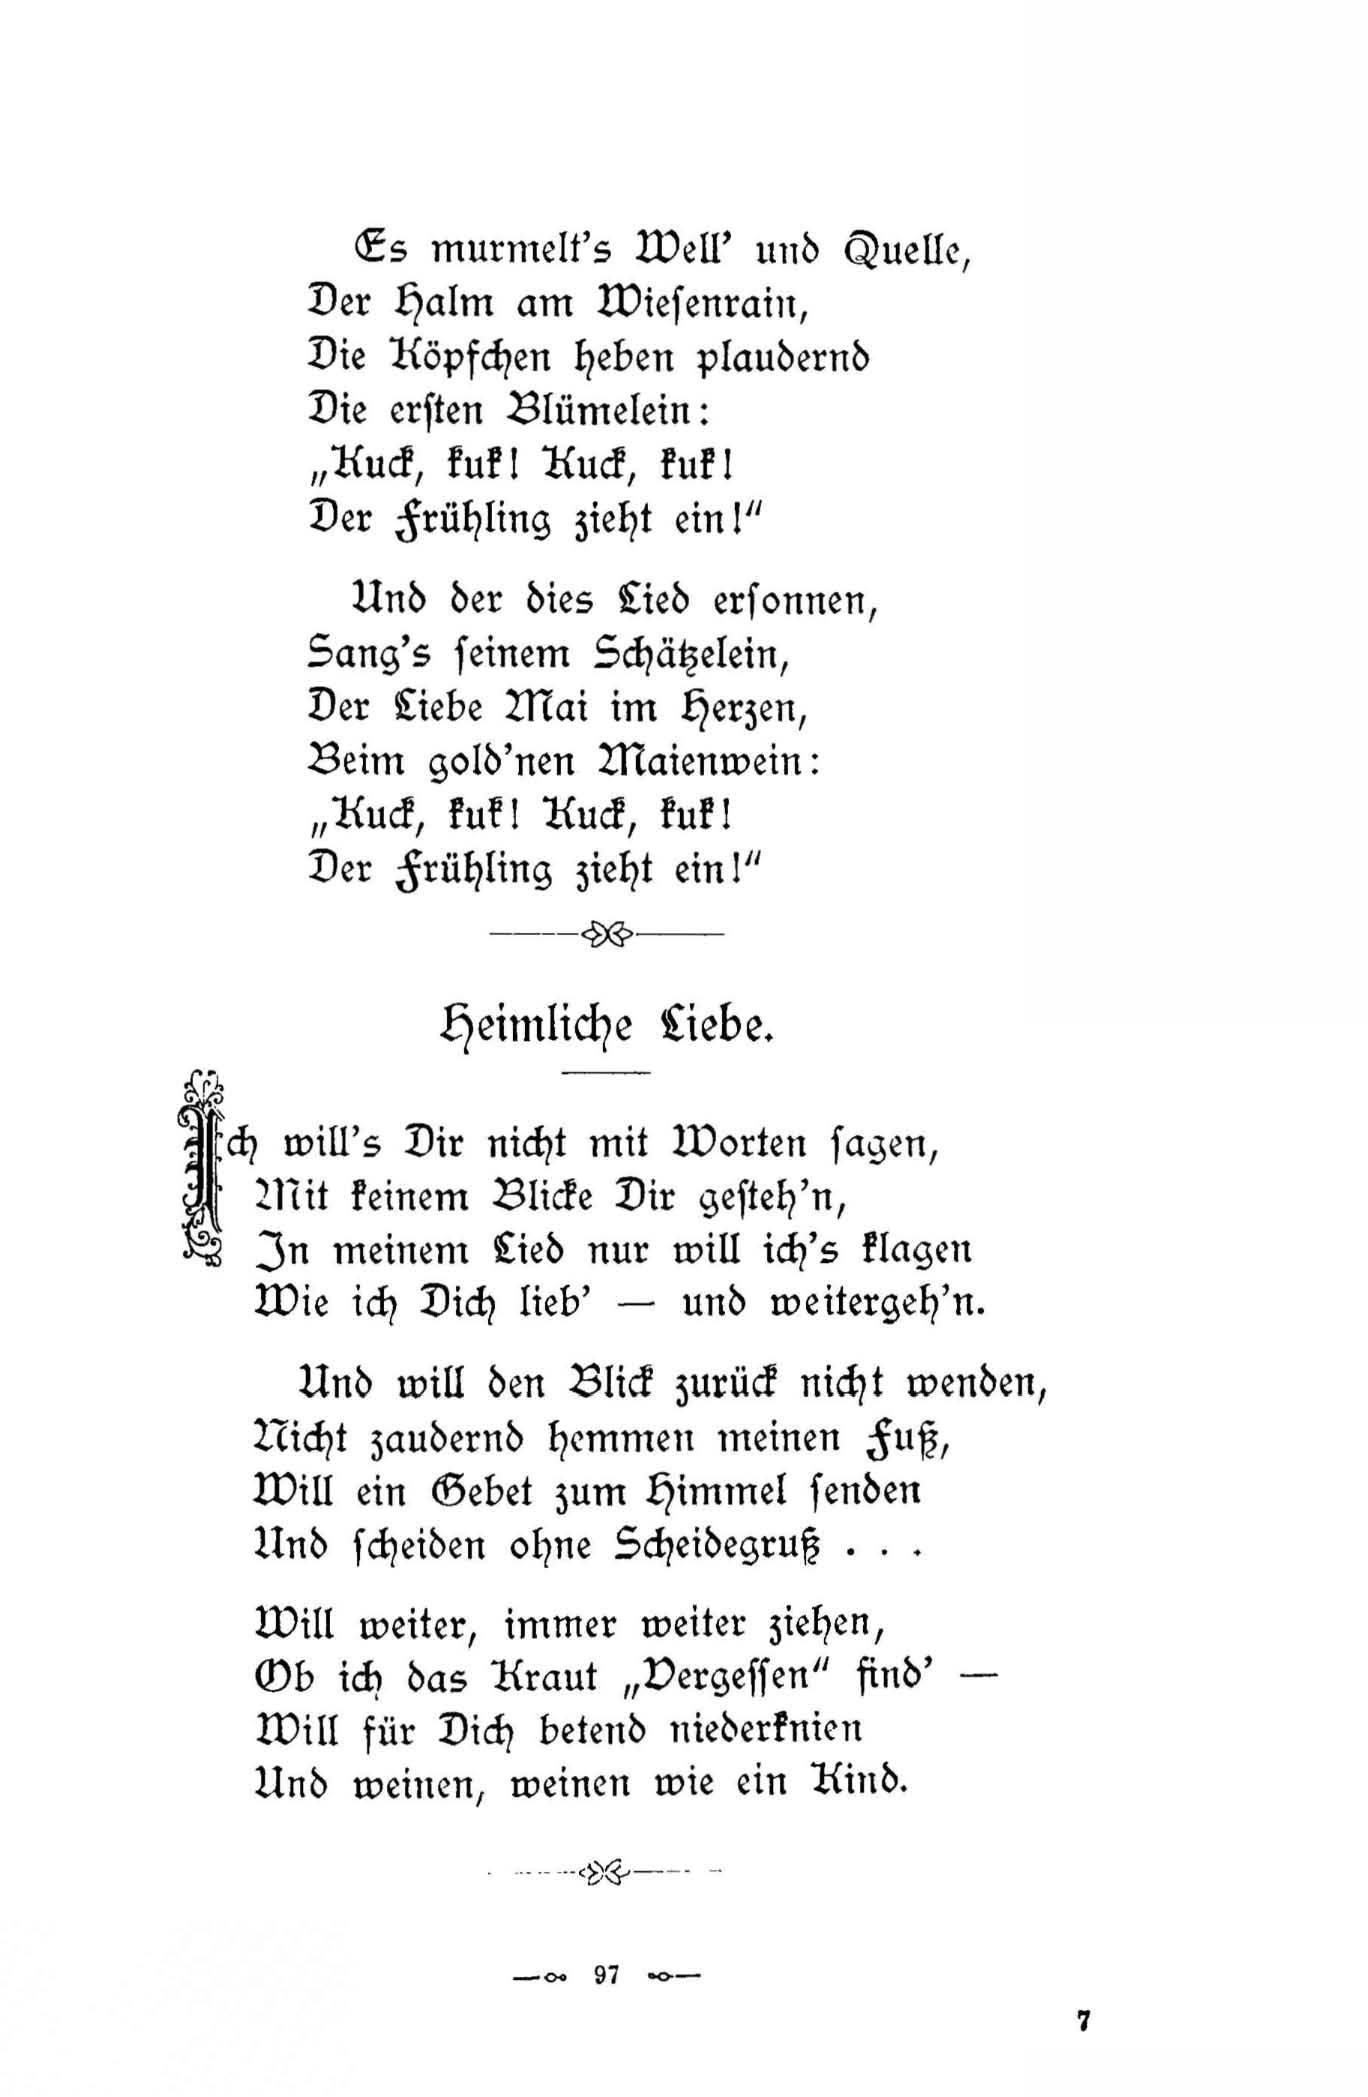 Heimliche Liebe (1896) | 1. (97) Main body of text